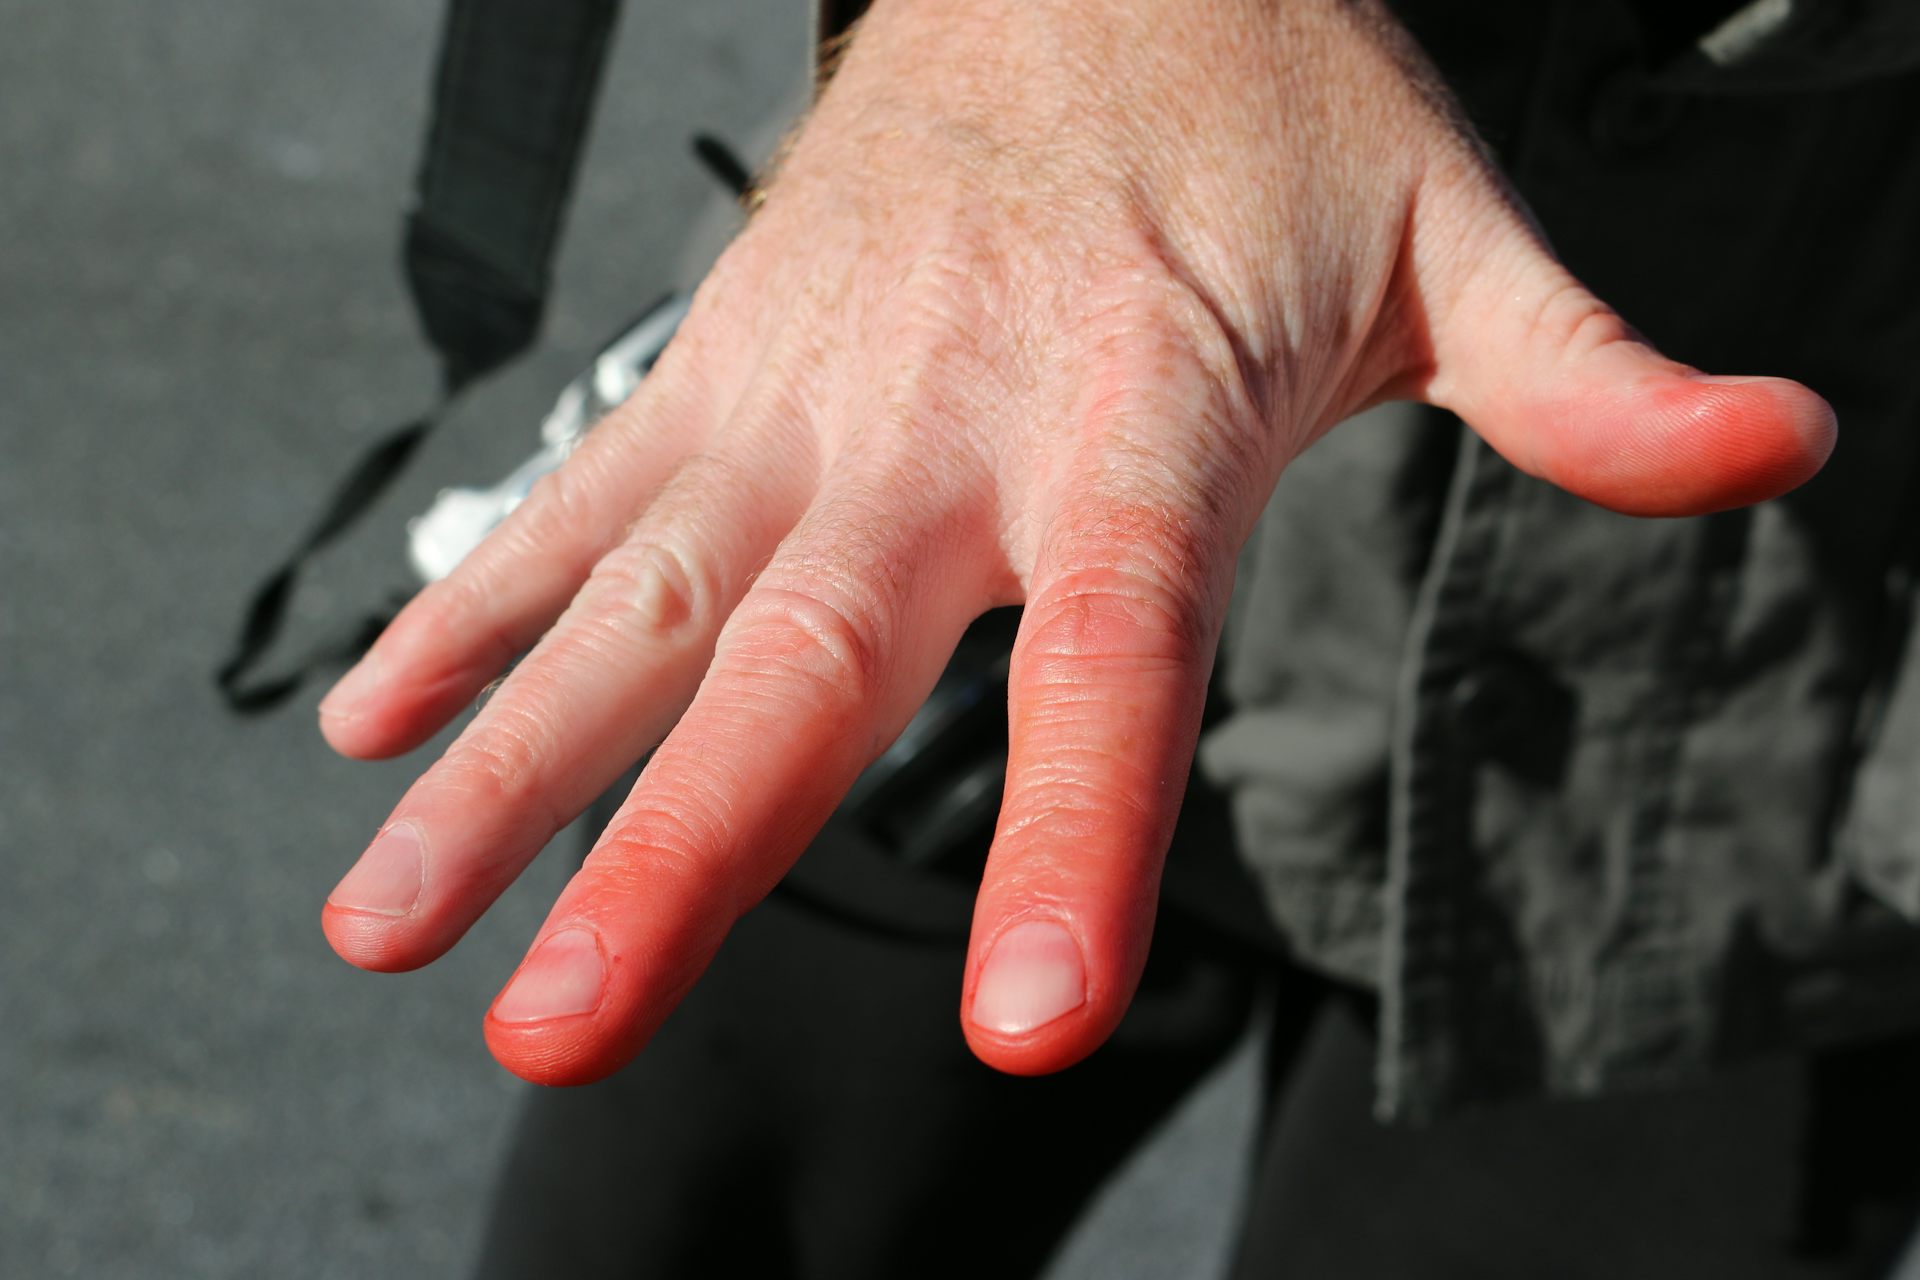  Dedos rojos por congelación.